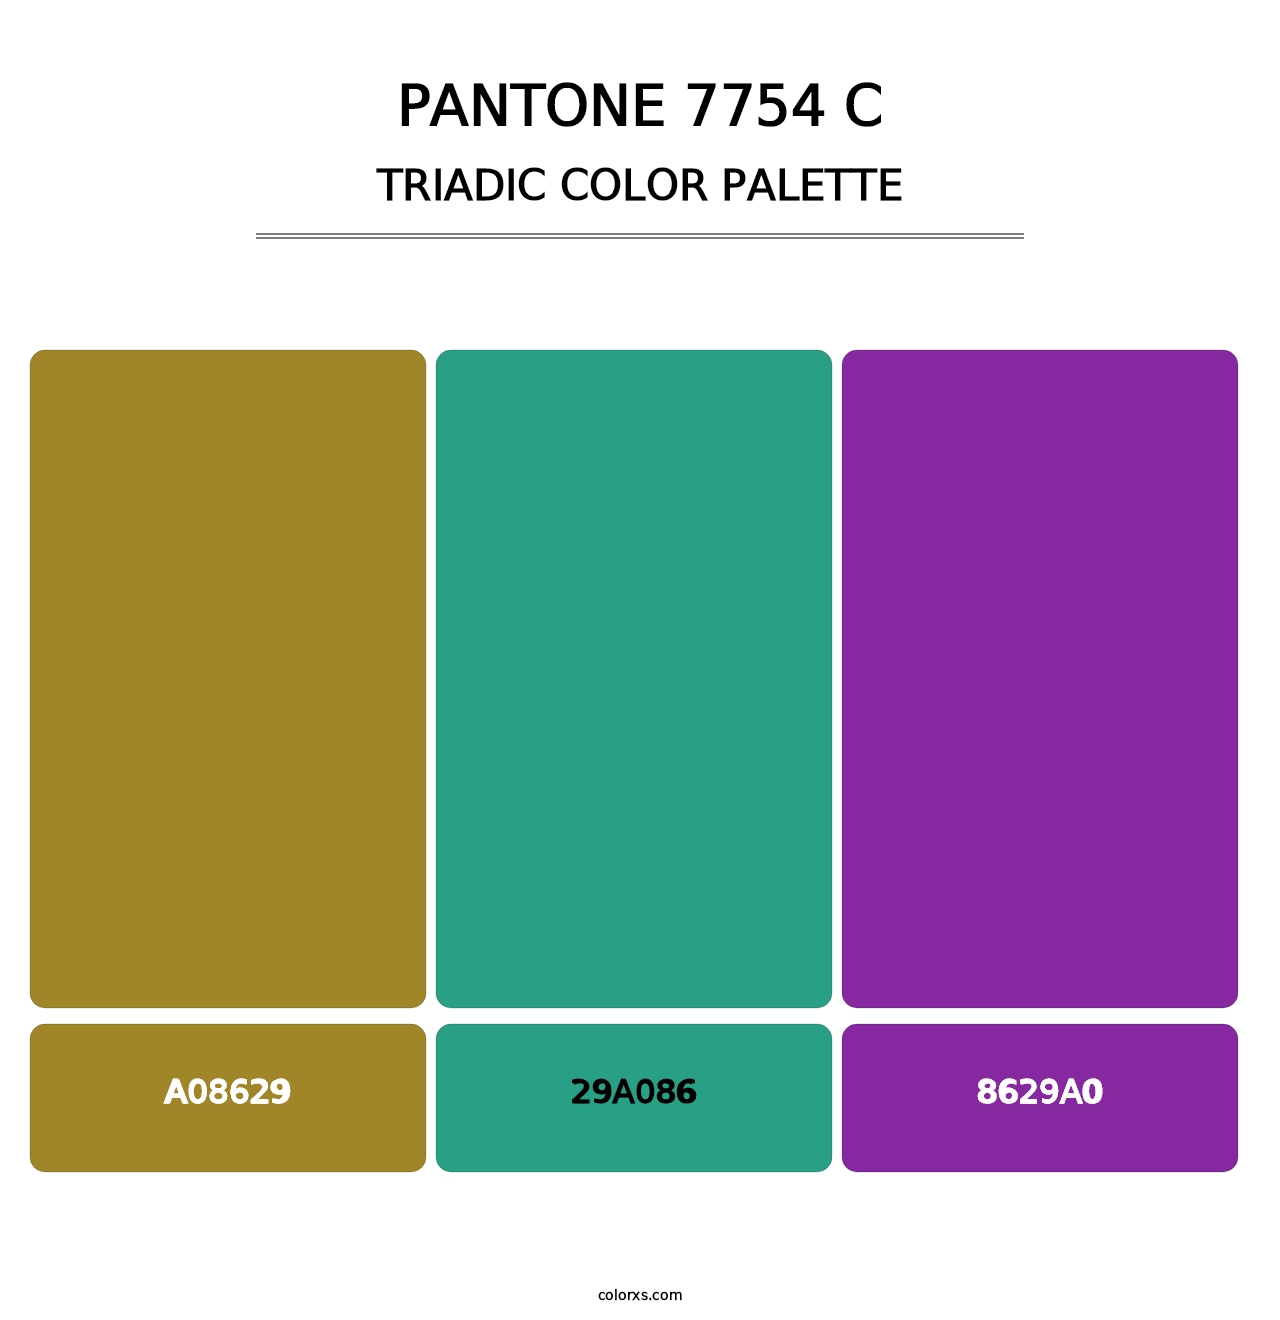 PANTONE 7754 C - Triadic Color Palette